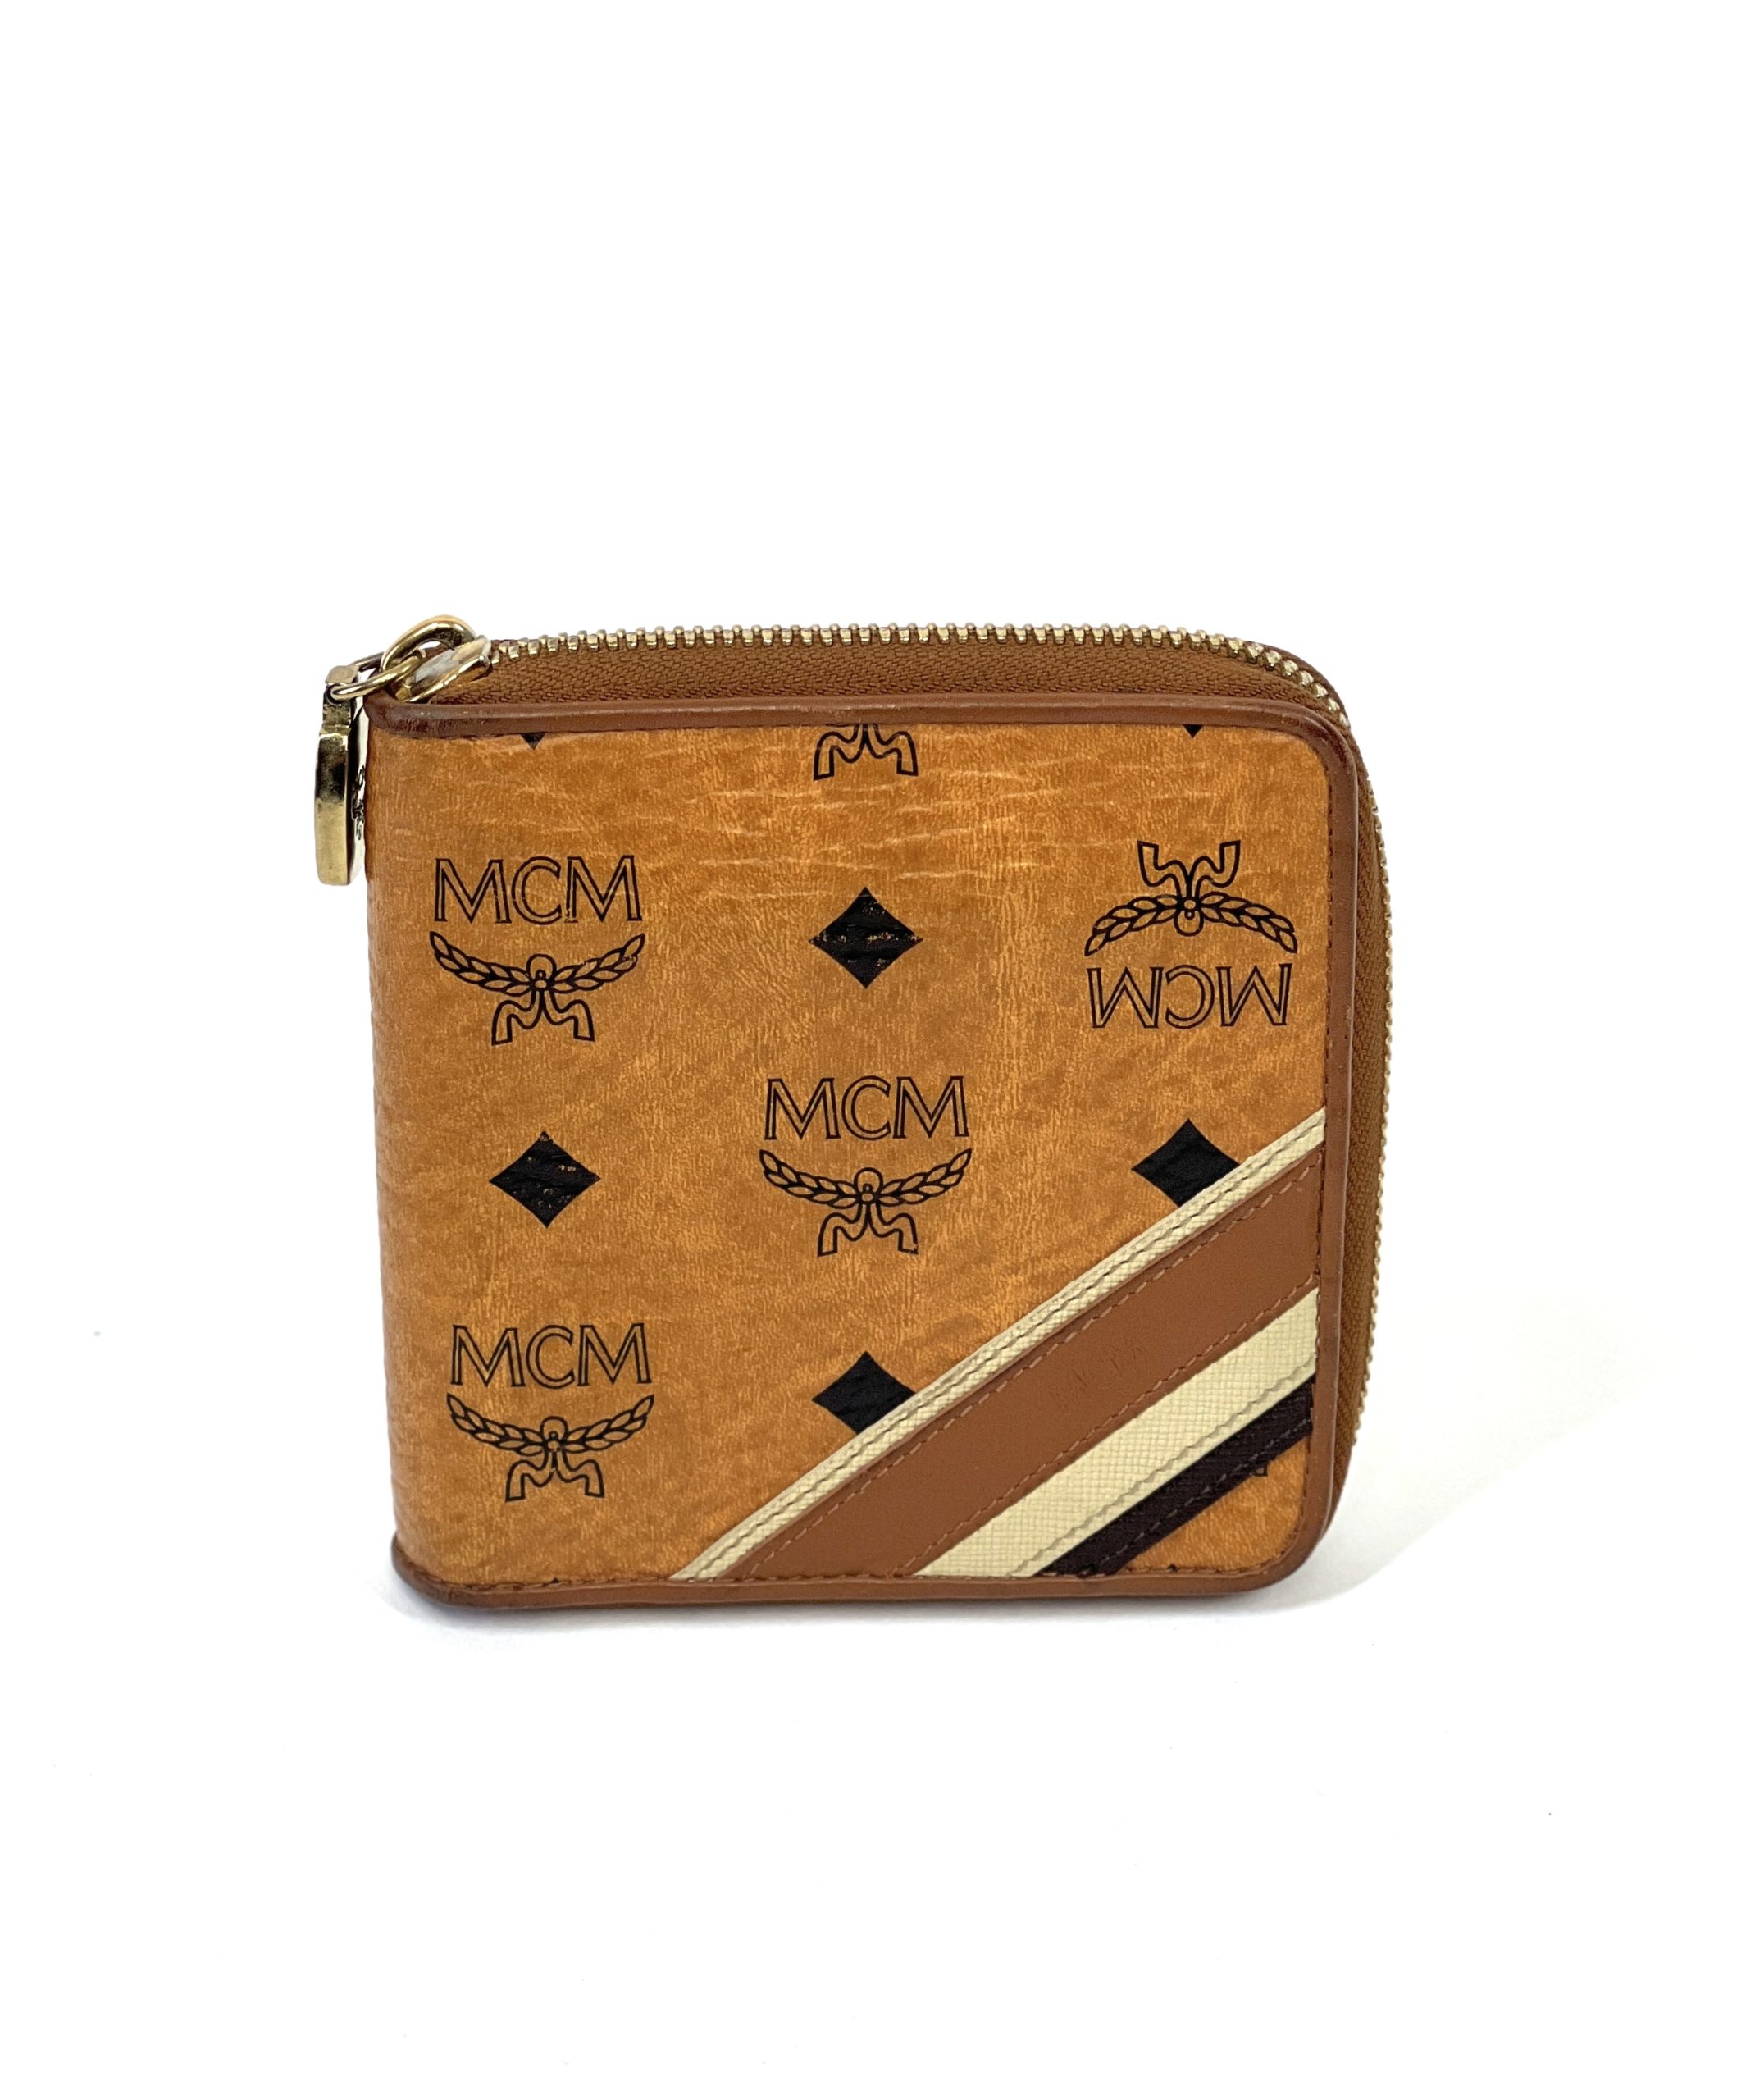 Mcm Visetos Original Key Wallet in Cognac